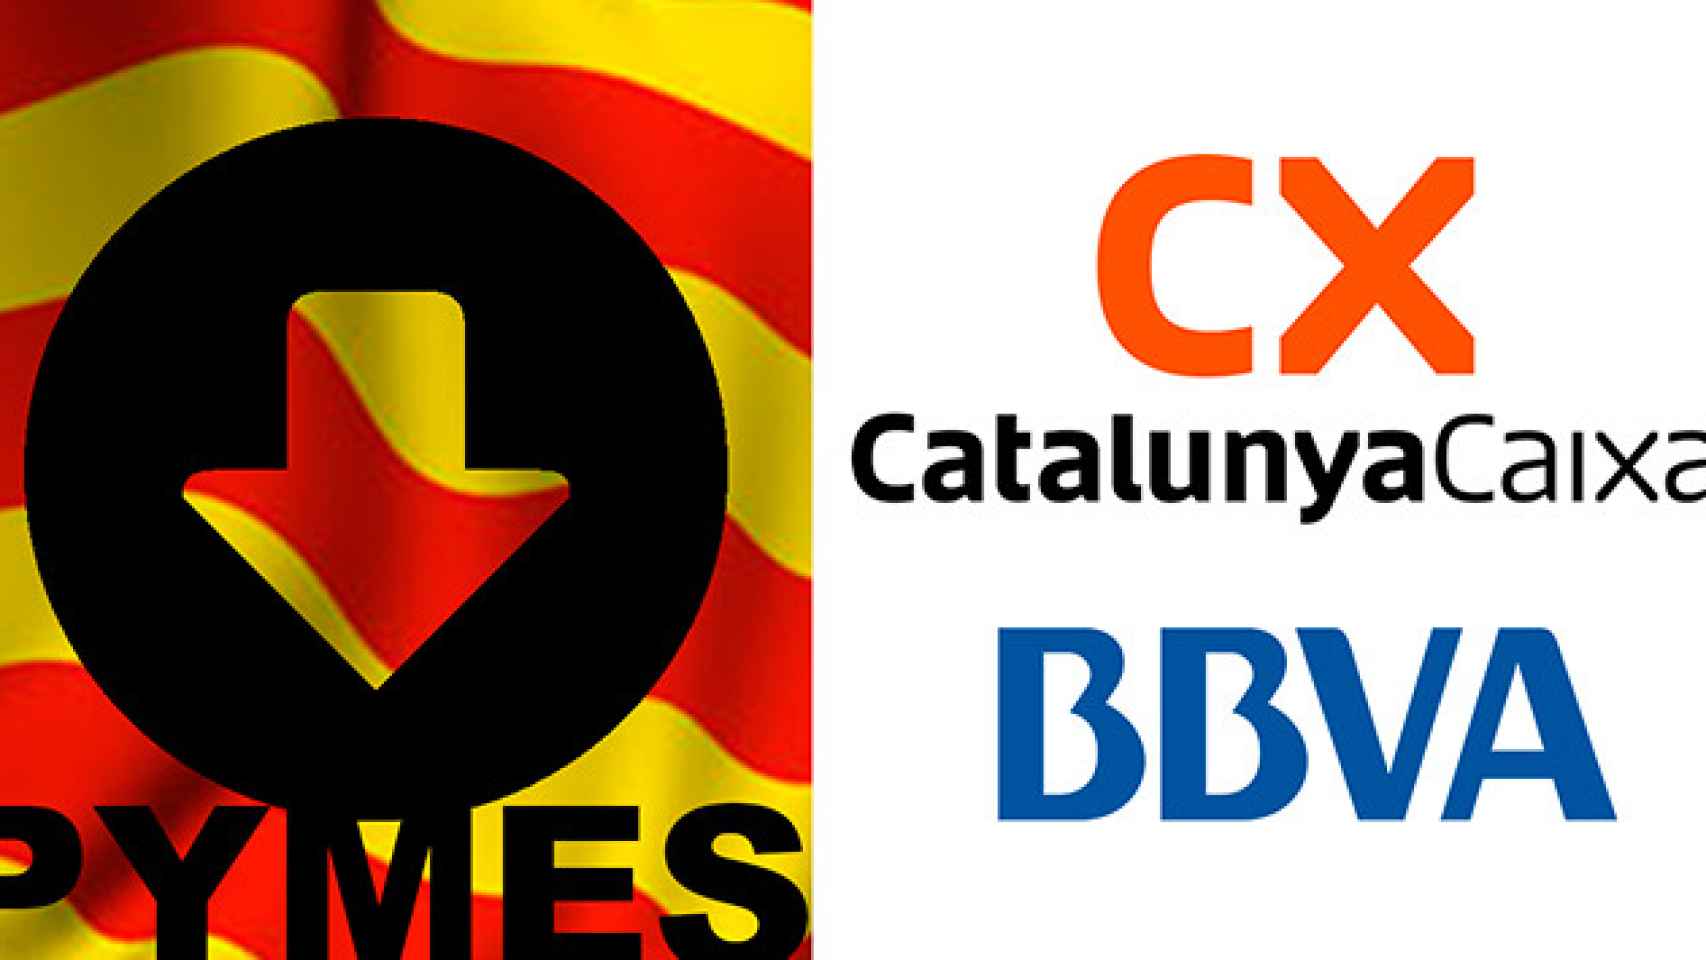 Las relaciones entre las pequeñas y medianas empresas catalanas y Catalunya Caixa pasa momentos delicados.